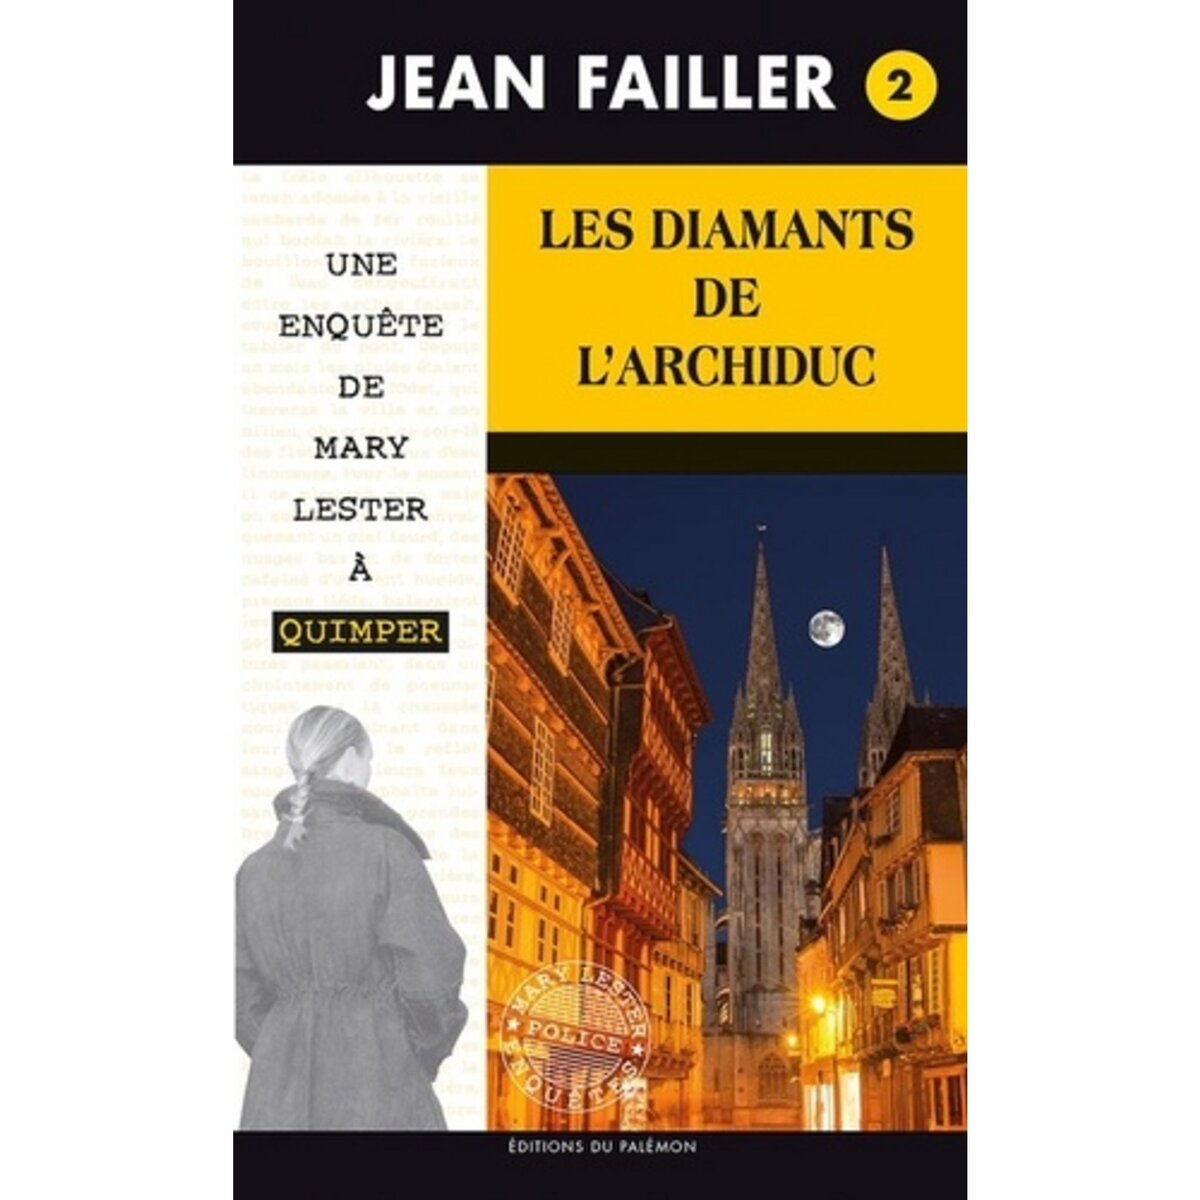  LES ENQUETES DE MARY LESTER TOME 2 : LES DIAMANTS DE L'ARCHIDUC, Failler Jean